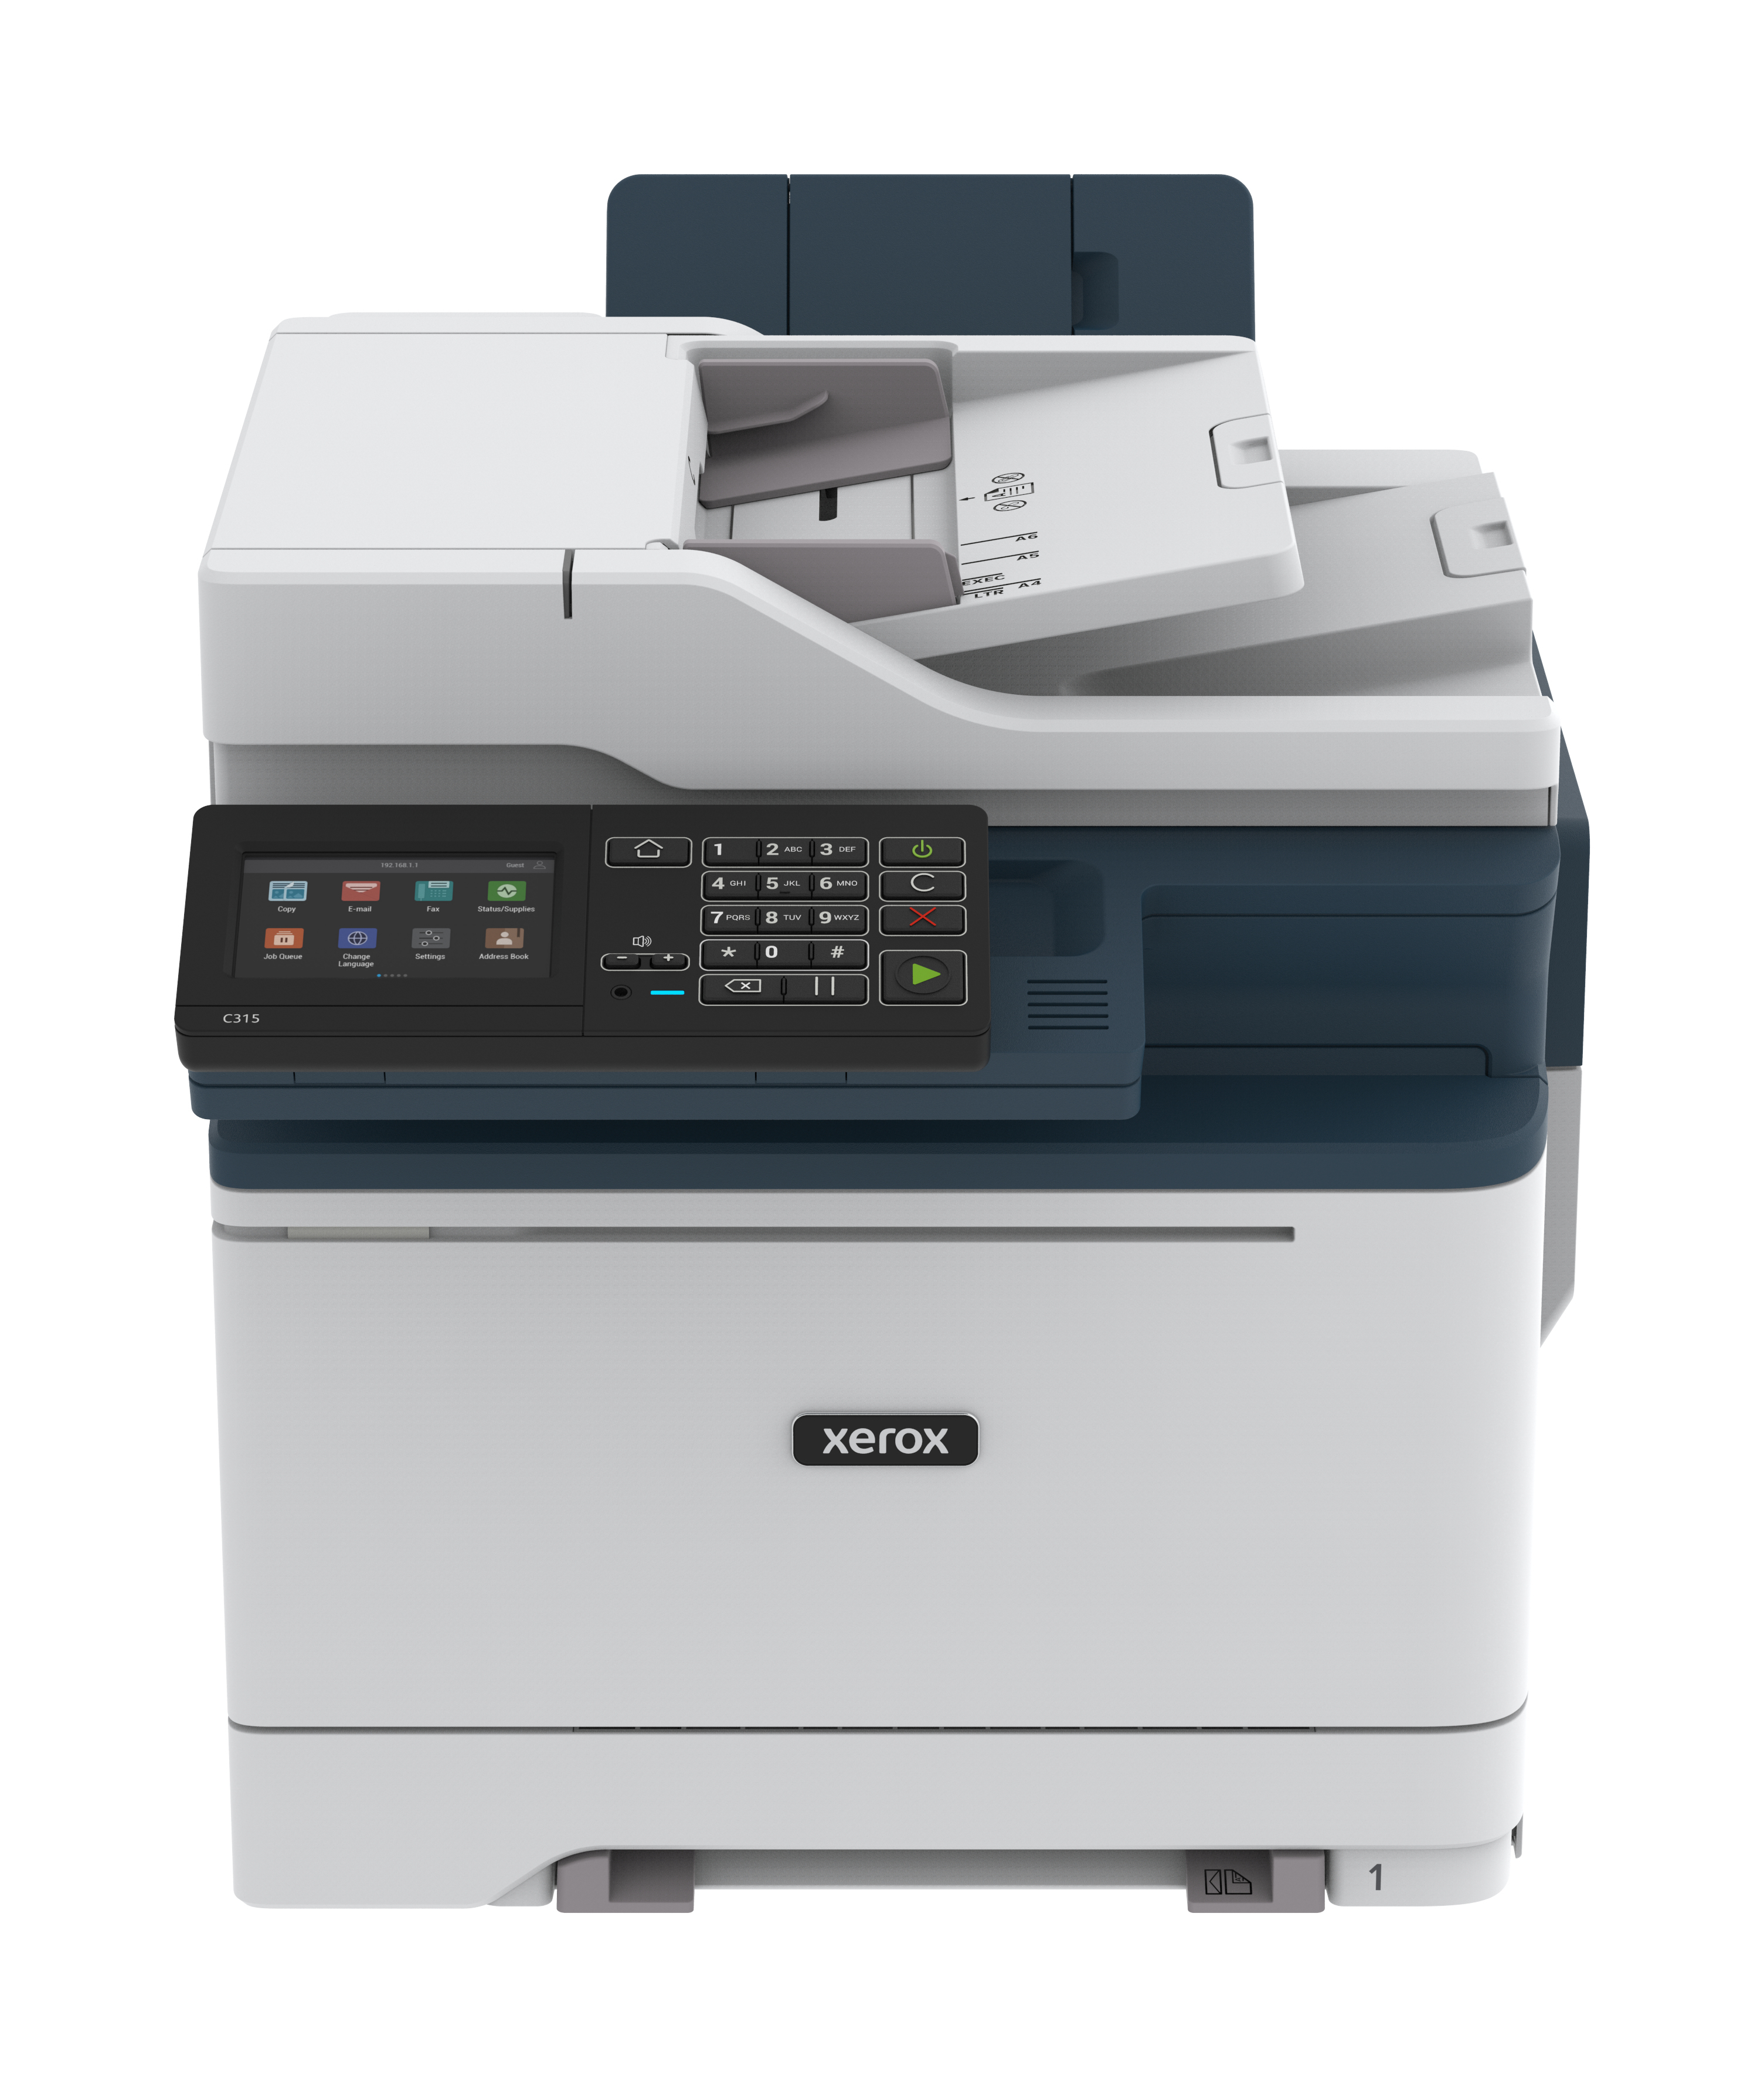 Xerox Xerox C315 A4 33 ppm draadloze dubbelzijdige printer PS3 PCL5e6/6 2 laden totaal 251 vel